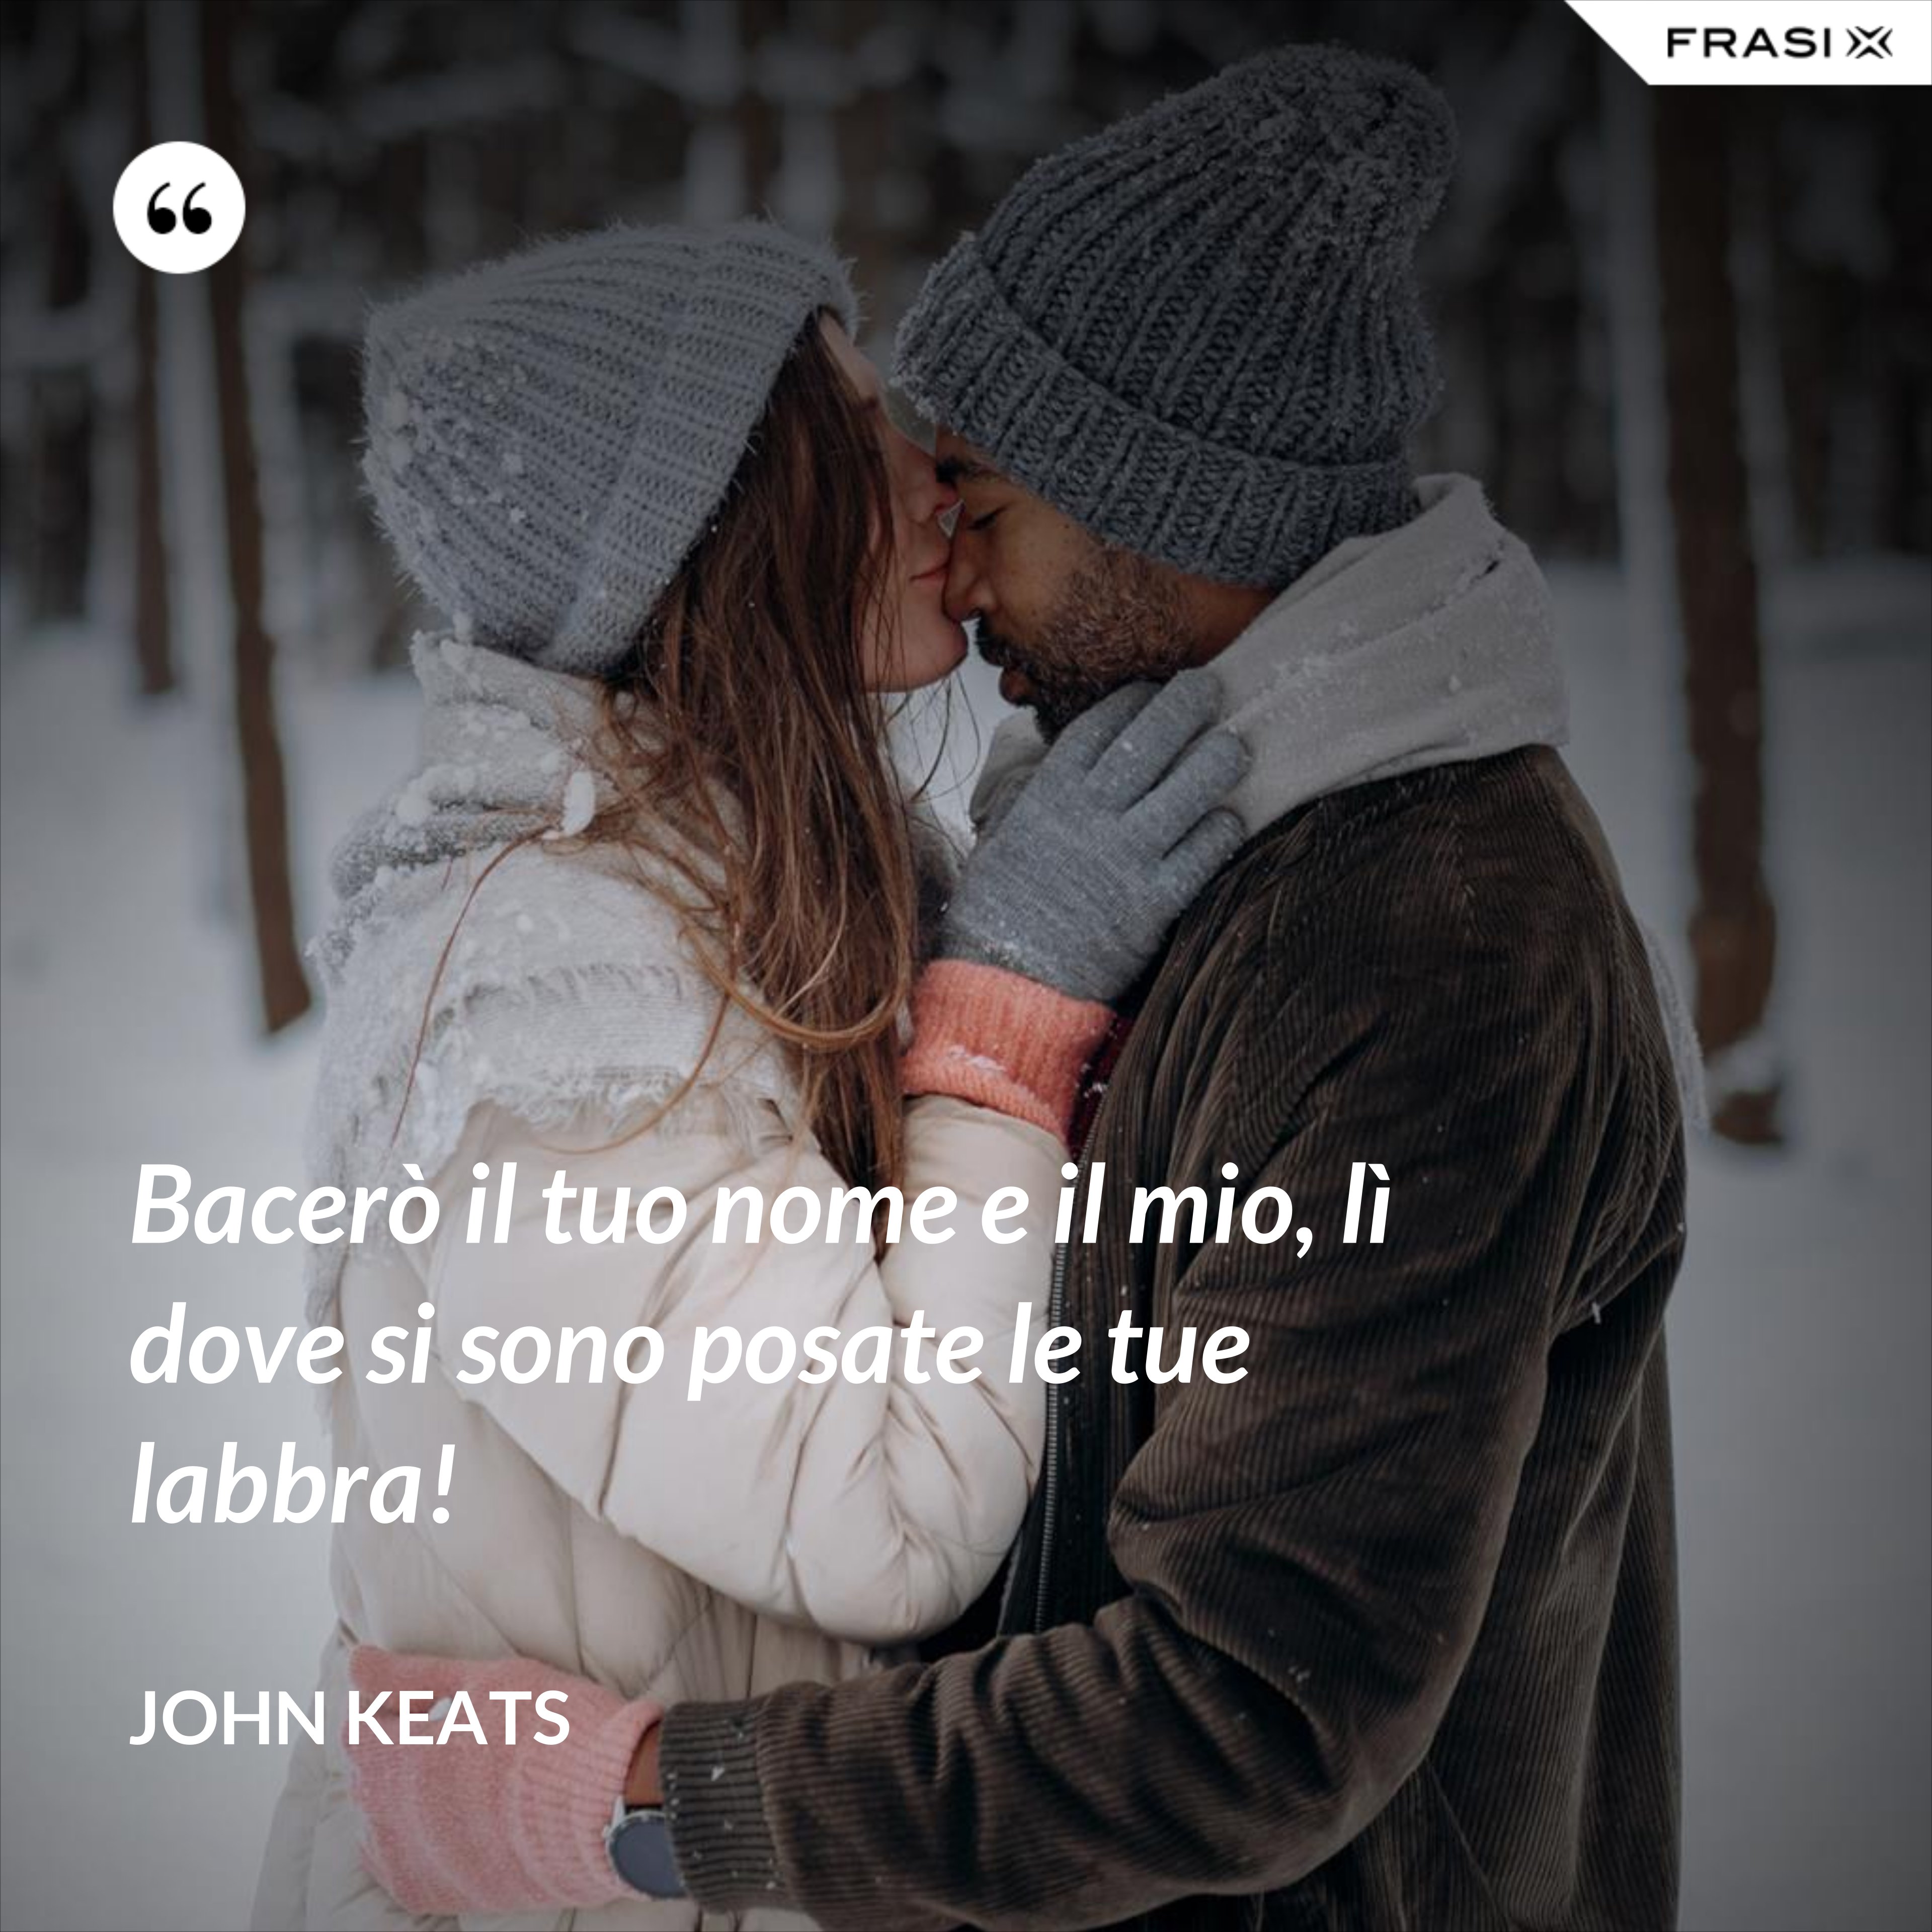 Bacerò il tuo nome e il mio, lì dove si sono posate le tue labbra! - John Keats